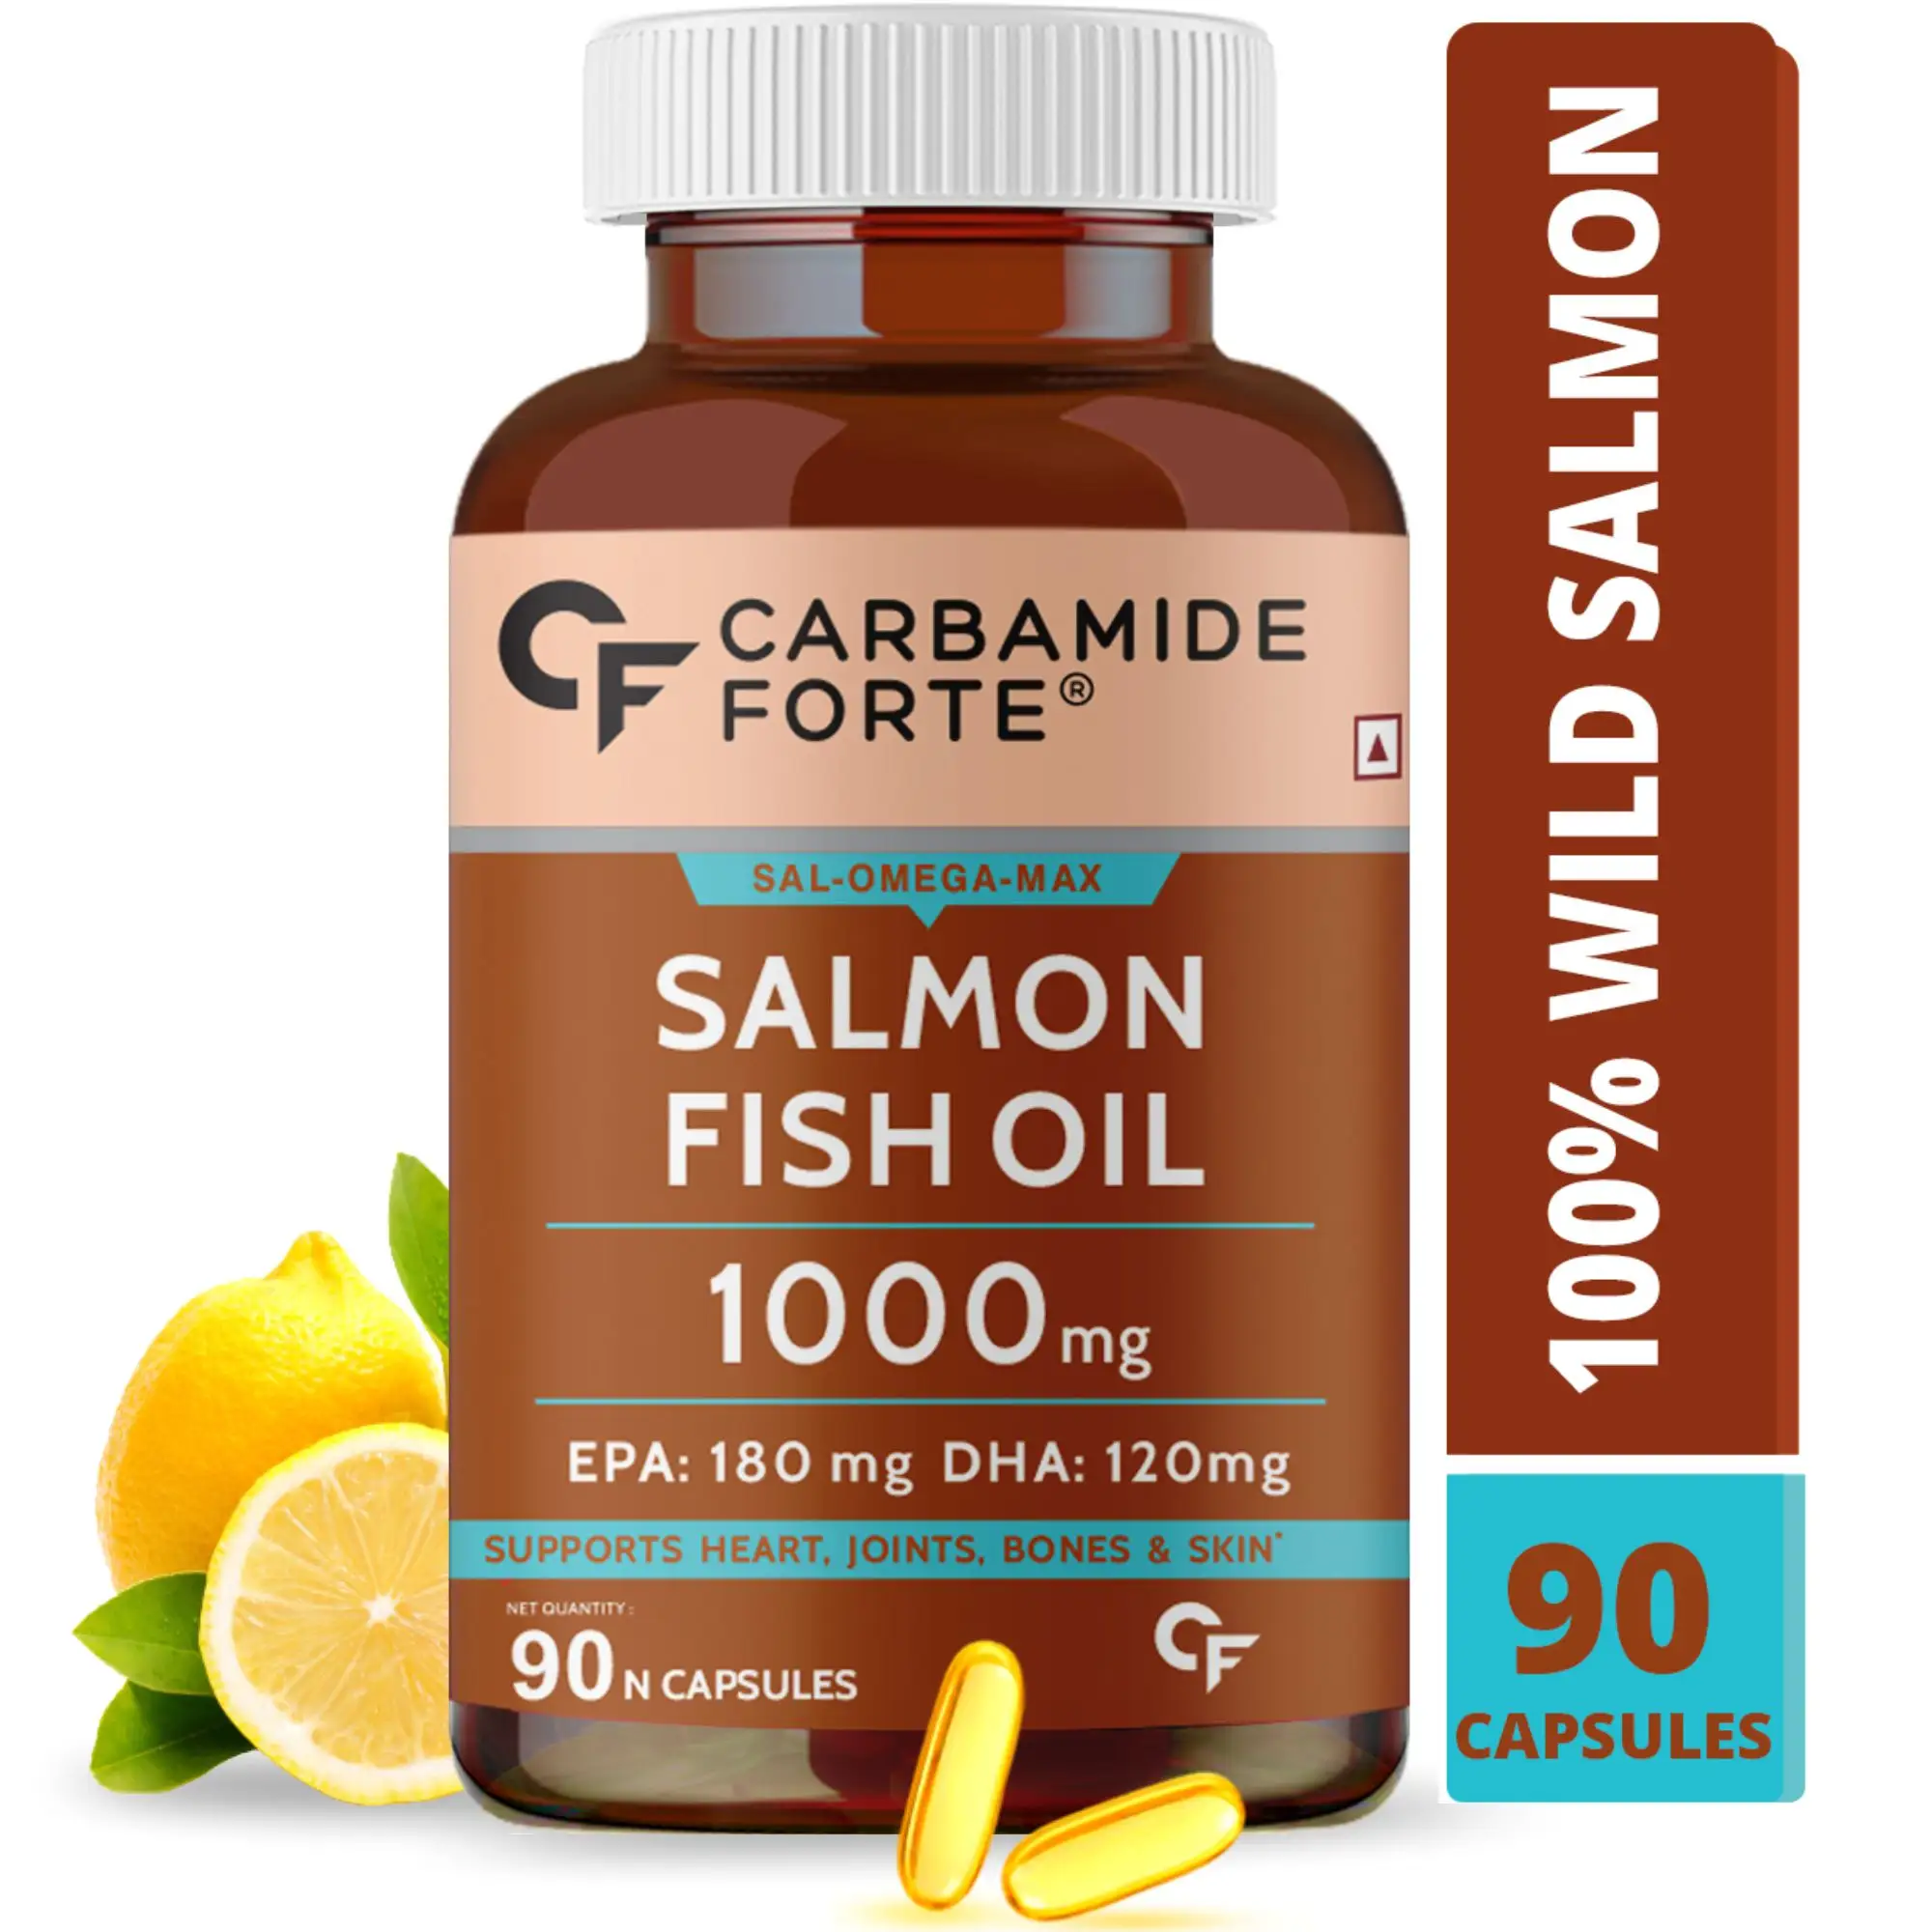 Óleo de salmão para peixe 1000mg softgel, com ômega 3, para coração saudável, cérebro, articulações fortes, ossos e melhor circulação sanguínea